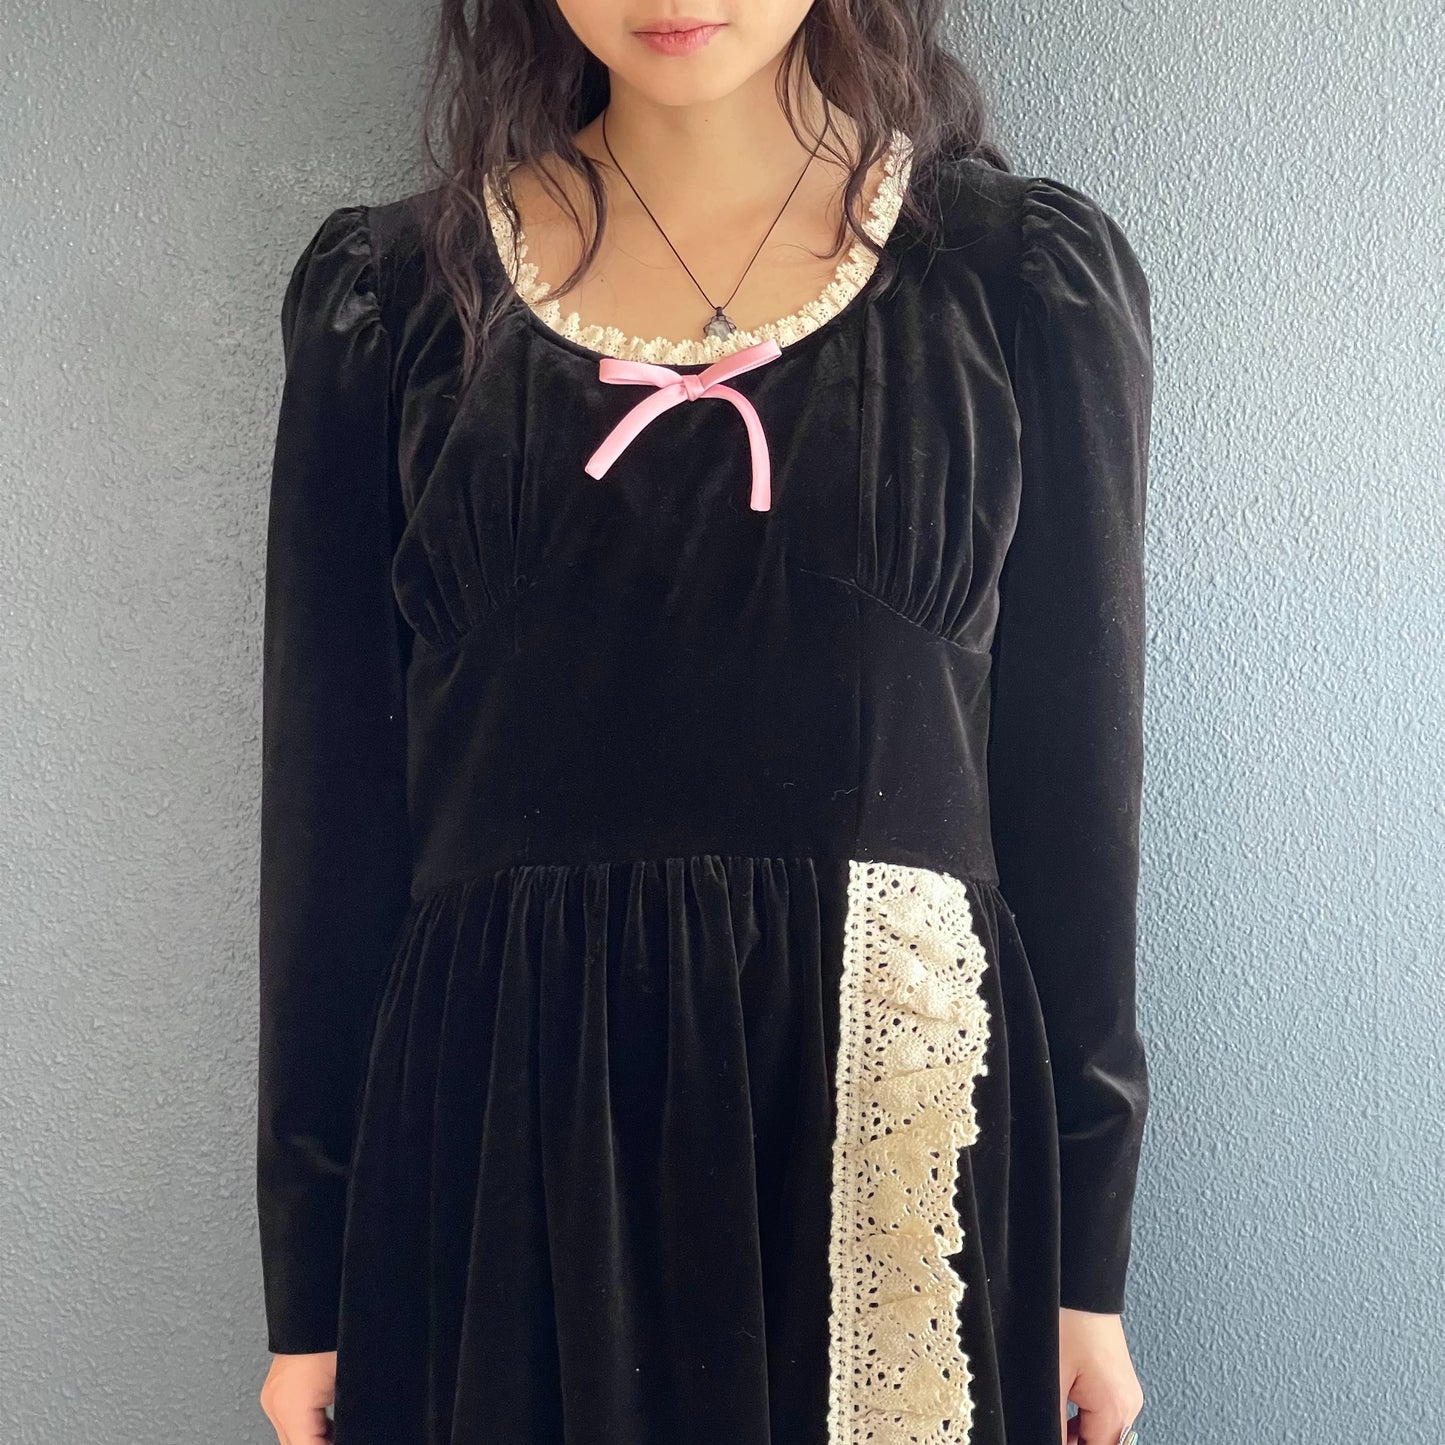 Wendy velvet dress / Black / ベルベットドレス